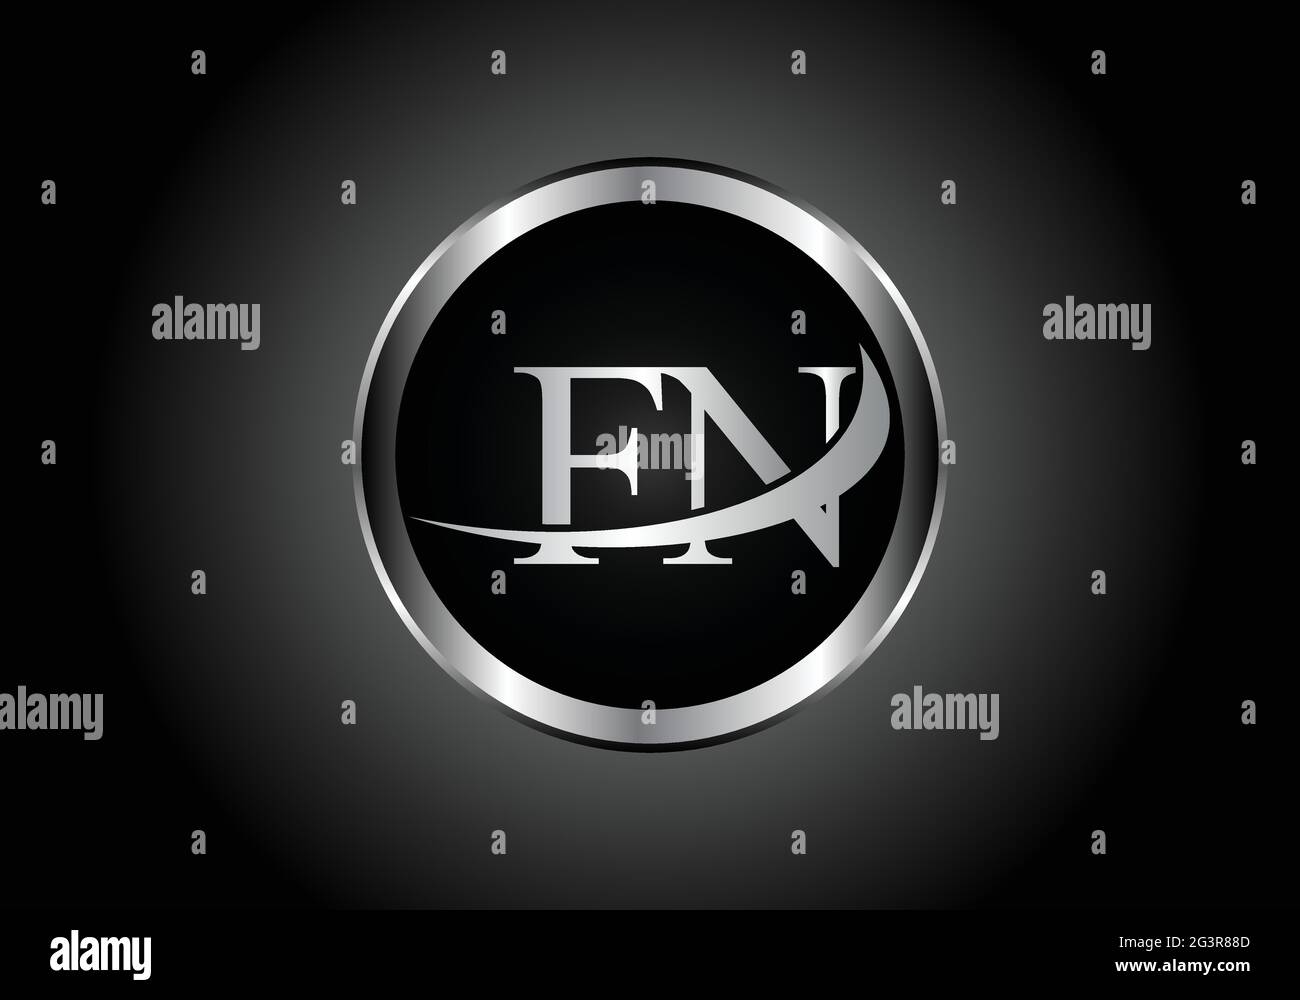 Lettre d'argent FN métal combinaison logo alphabet conception d'icône avec la couleur grise sur le noir et blanc dégradé design pour une entreprise ou une entreprise Illustration de Vecteur